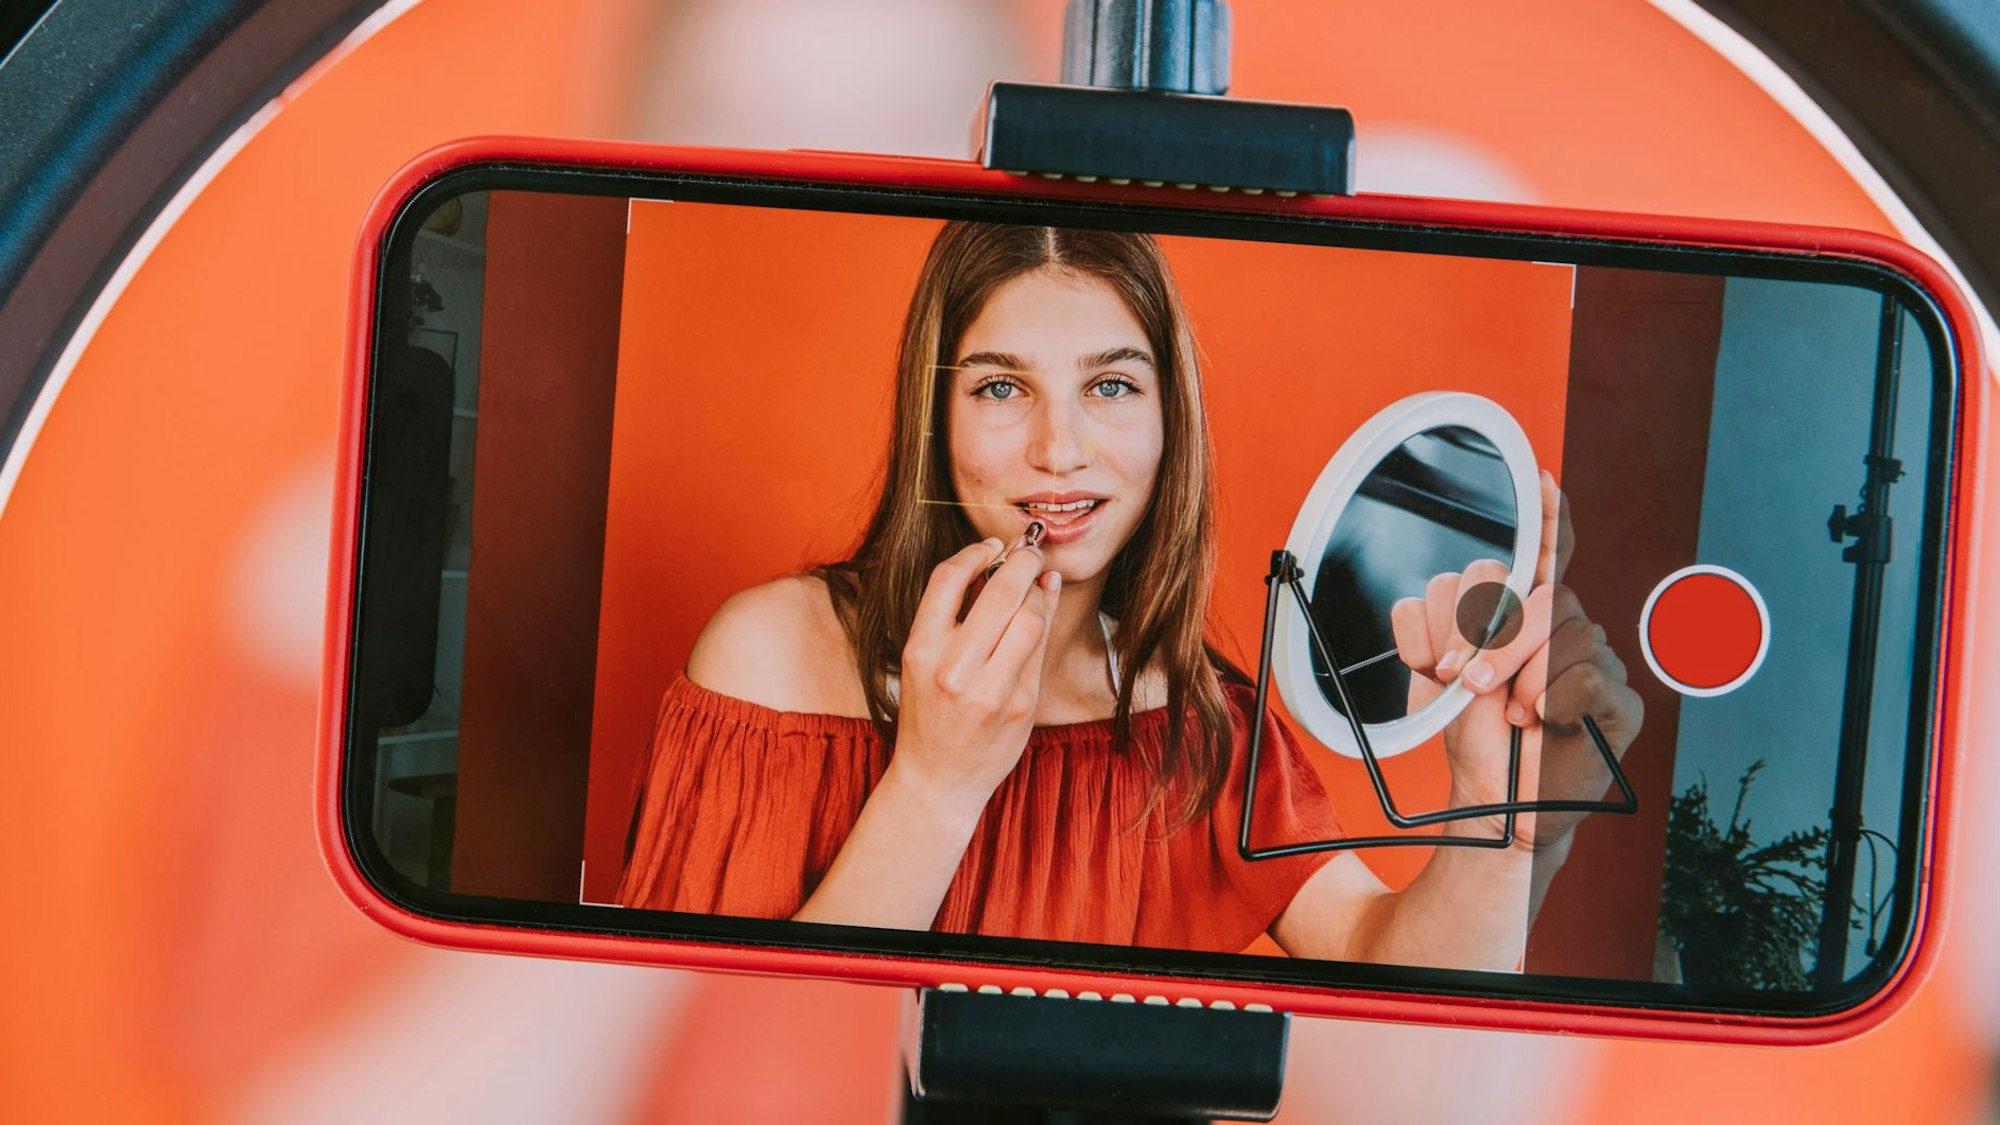 Auf einem Handy-Display sieht man das Bild einer Influencerin, die einen Spiegel in der Hand hält und sich die Lippen schminkt.